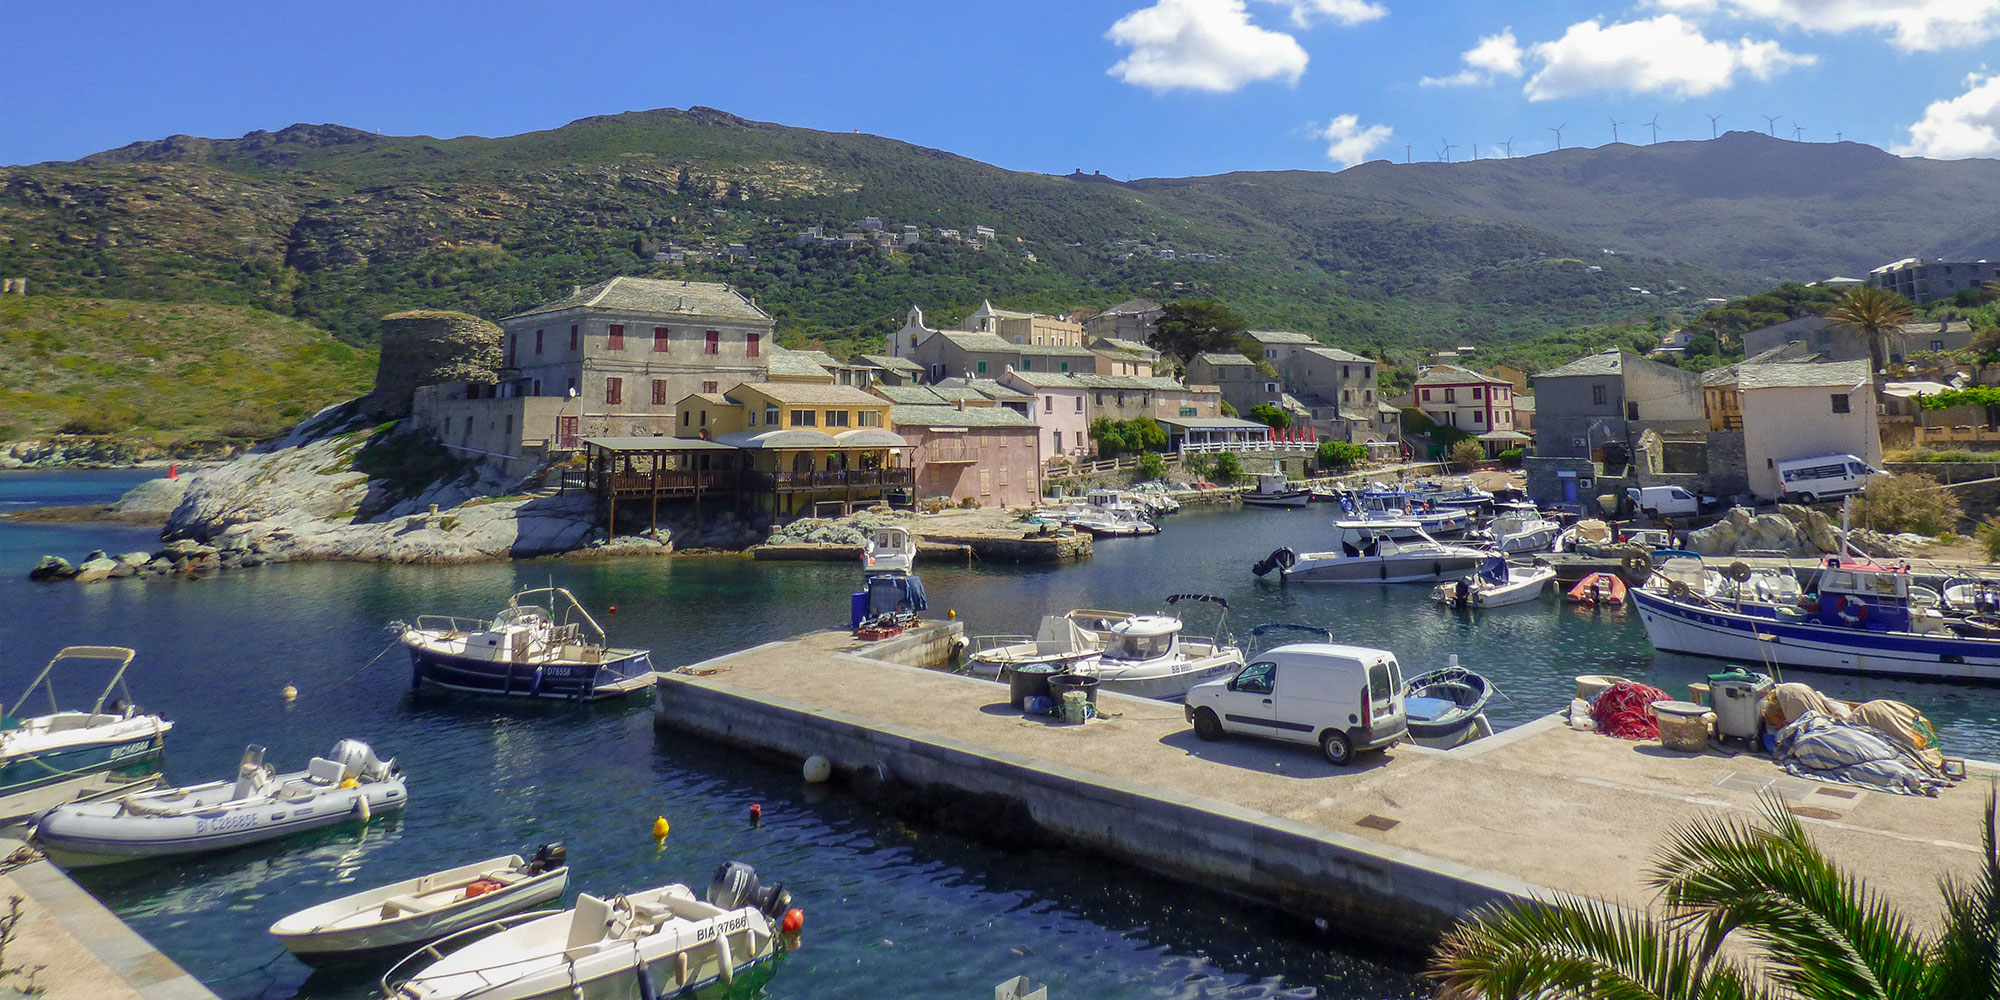 Location de vacances à la marine de Mute (Morsiglia/Centuri) en Corse du Nord dans la région du Cap Corse